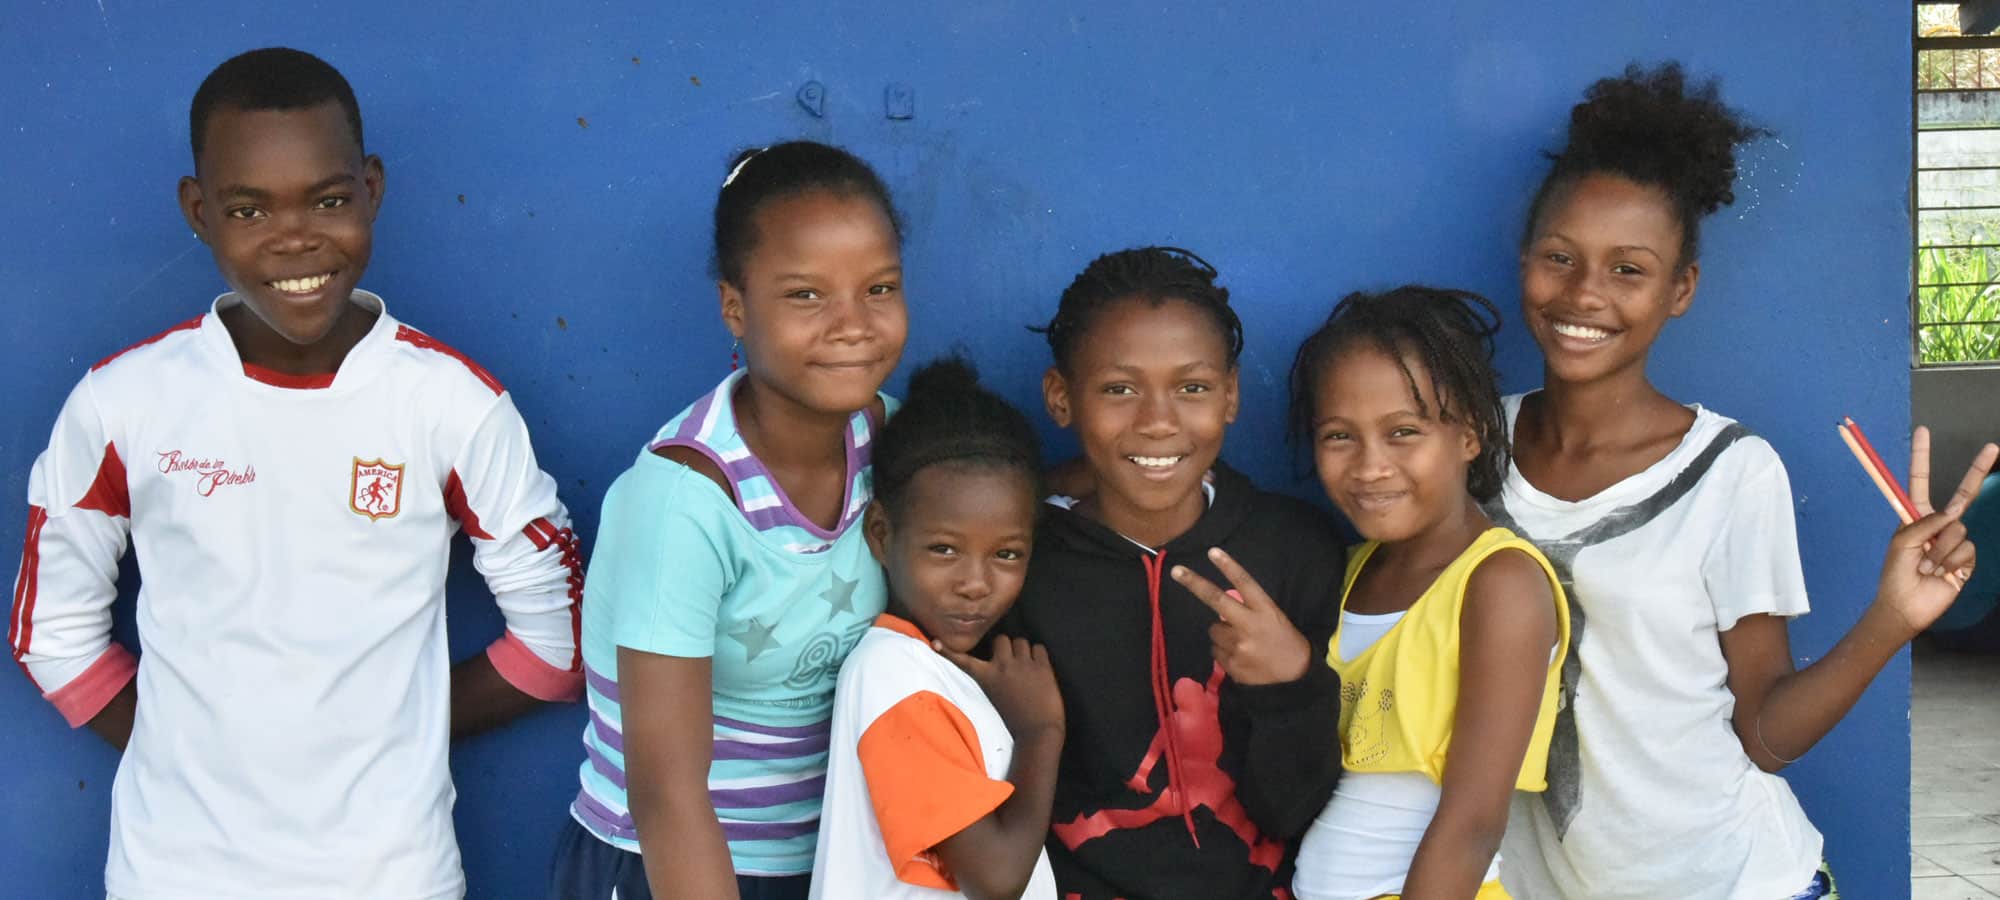 Fem jenter fra Colombia står tett sammen og smiler. Bak dem er det en blå vegg. Foto: Giti Carli Moen